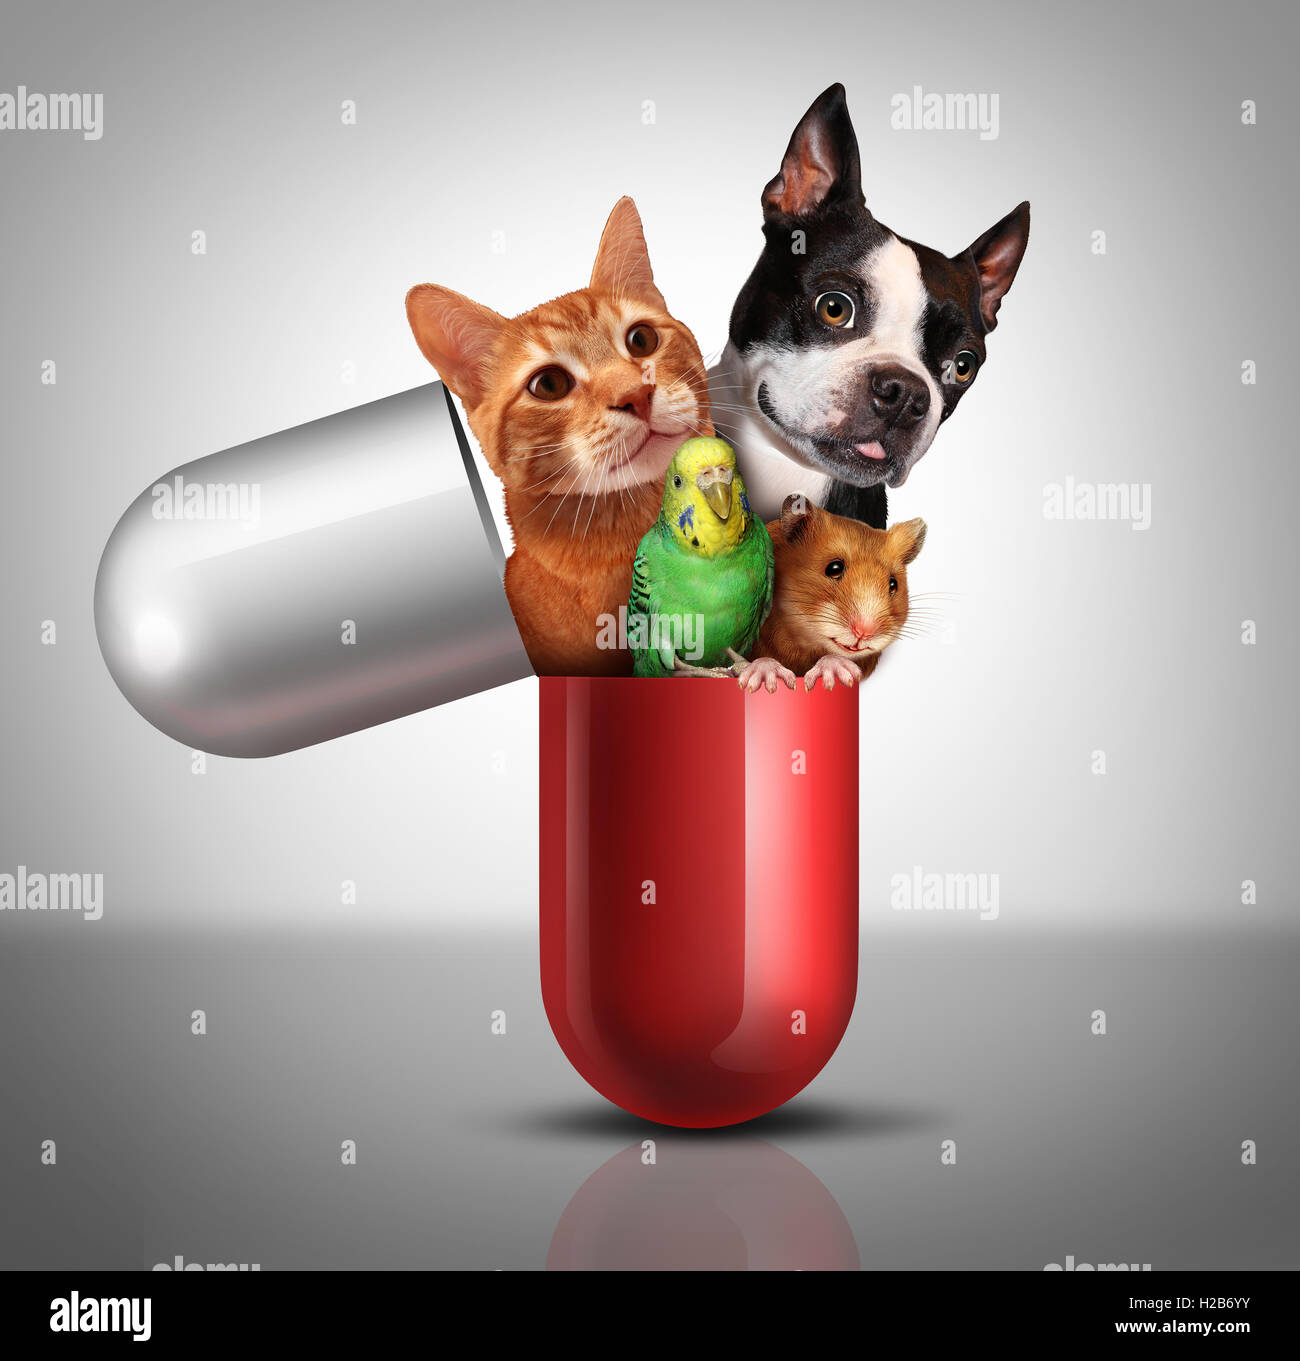 Haustier Medizin und Tier verschreibungspflichtige Medikamente als Veterinär Arzneimitteltherapie und Tierarzt medizinisches Konzept als eine riesige Pille mit einem Hund Katze Hamster und Vogel aus einer Kapsel Pille mit 3D Abbildung Elemente, Stockfoto